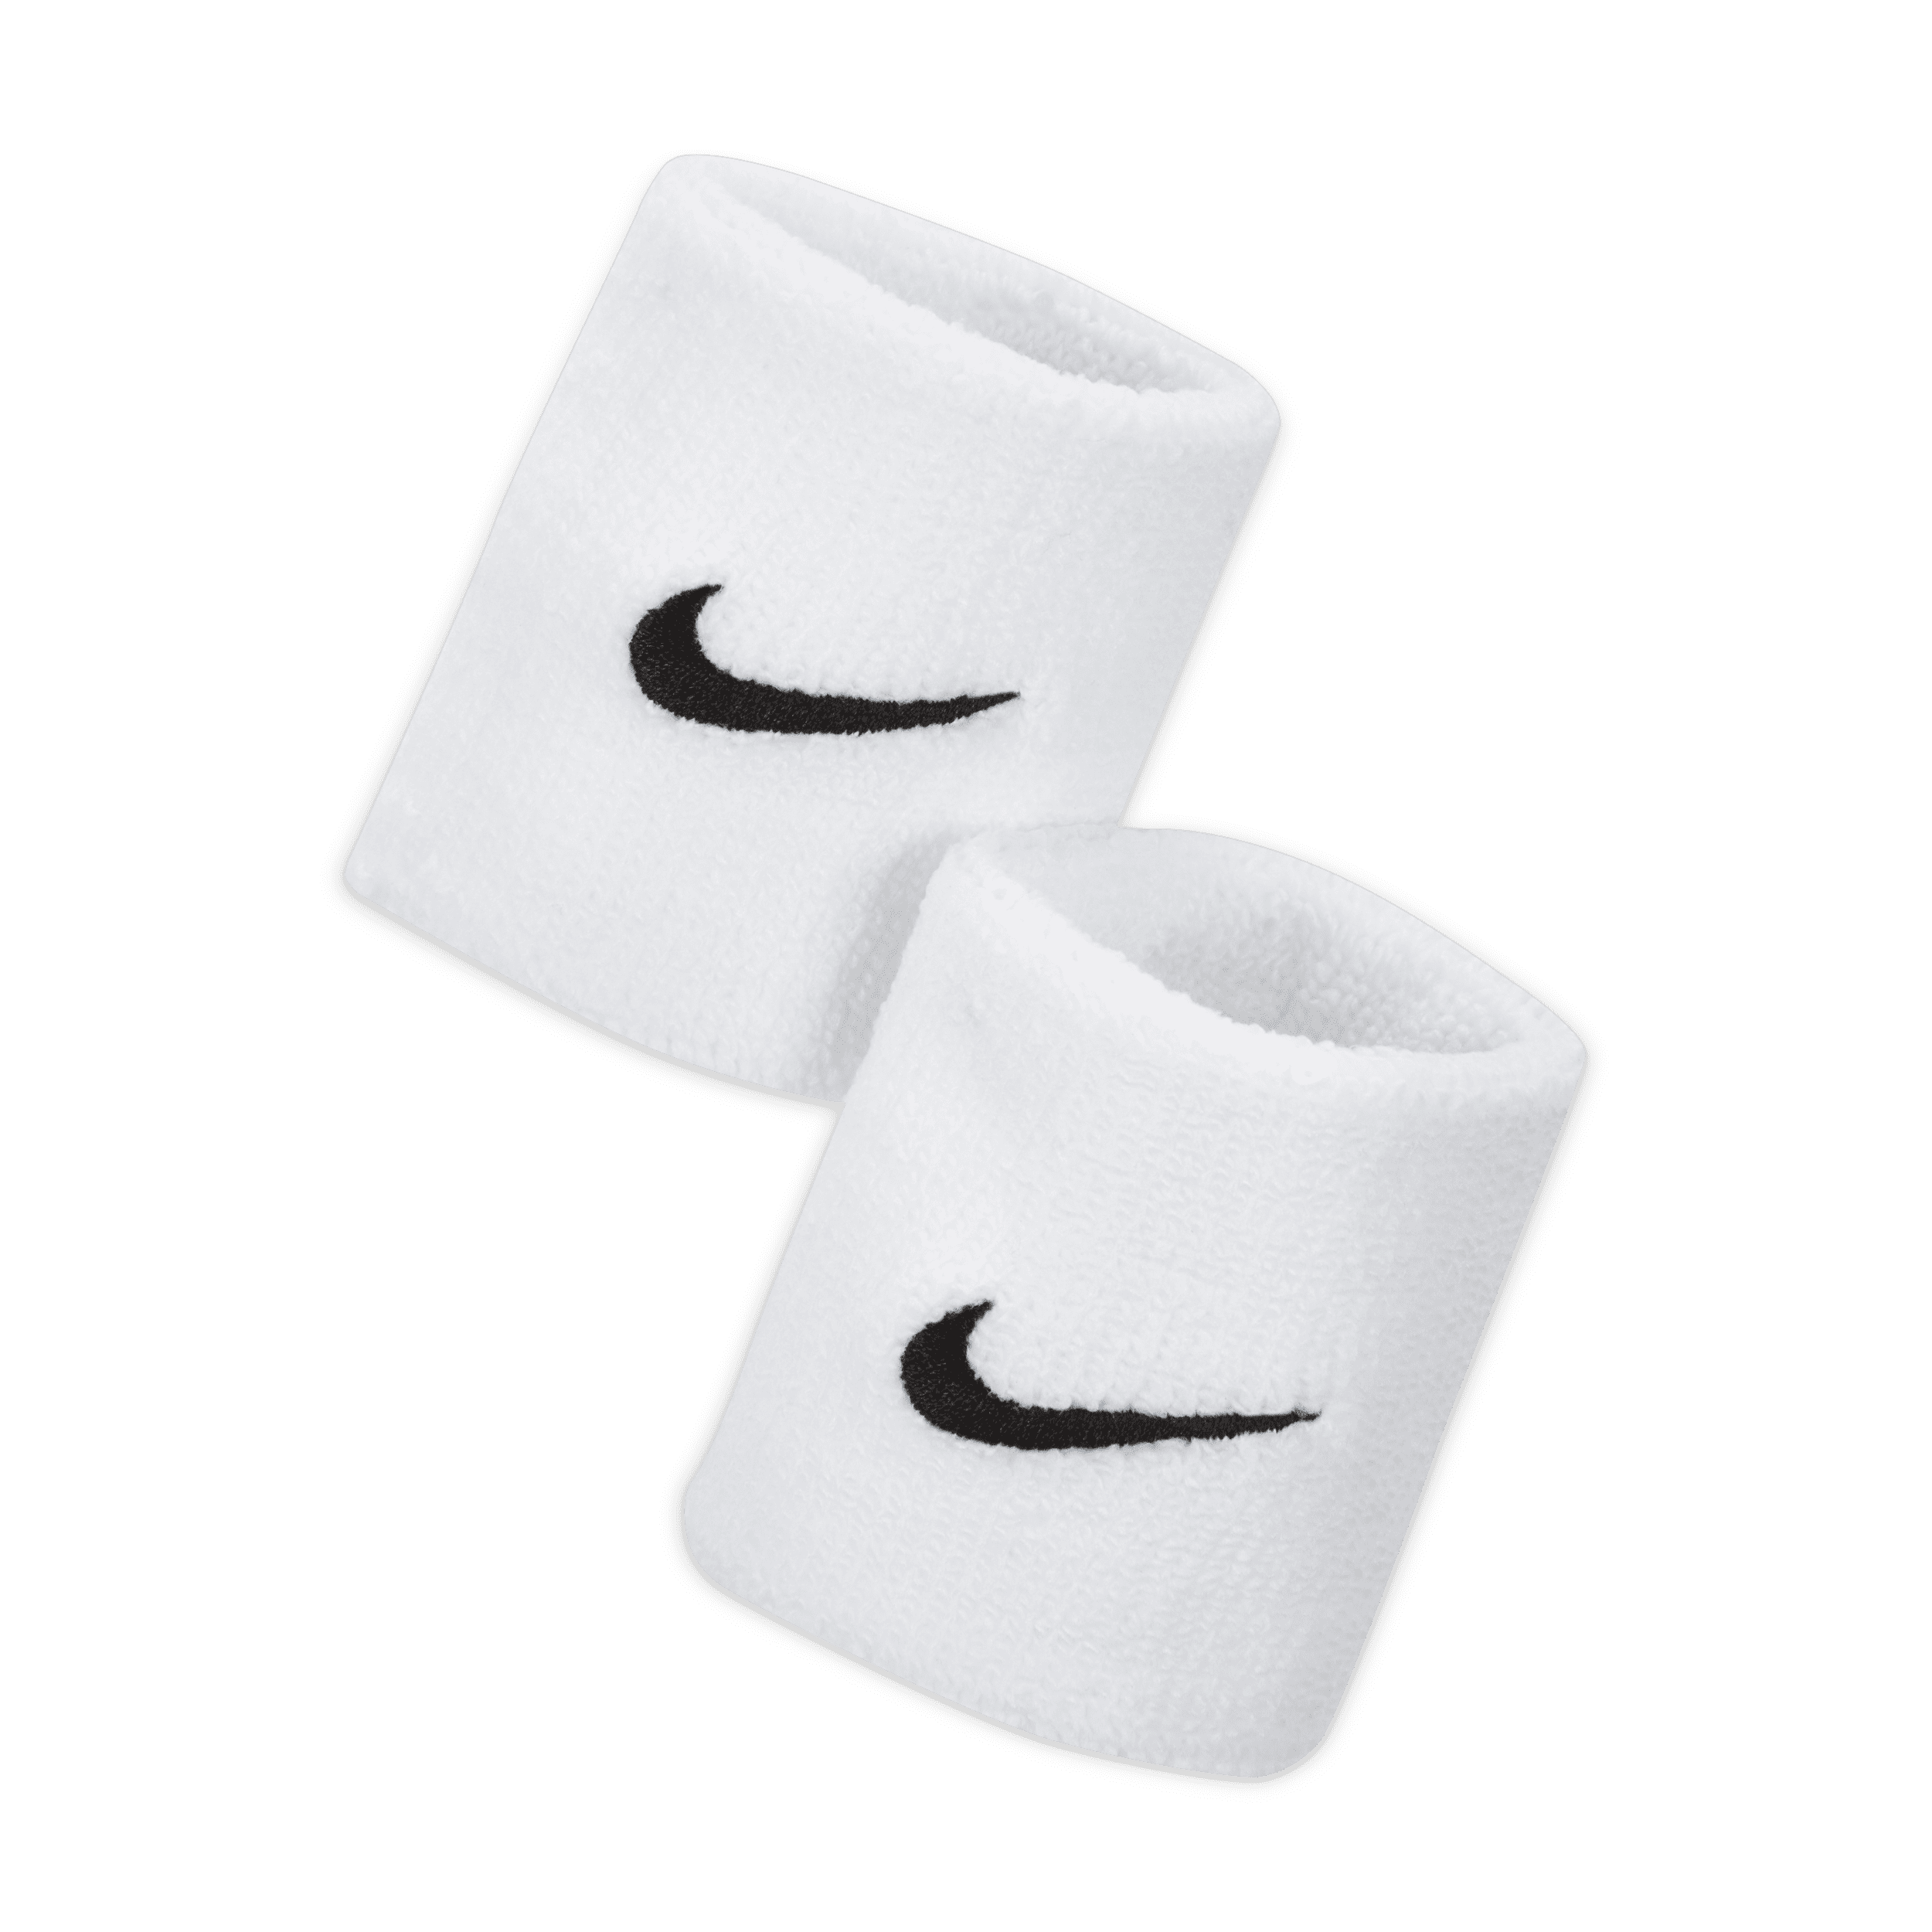 Nike Premier Muñequeras de tenis - Blanco